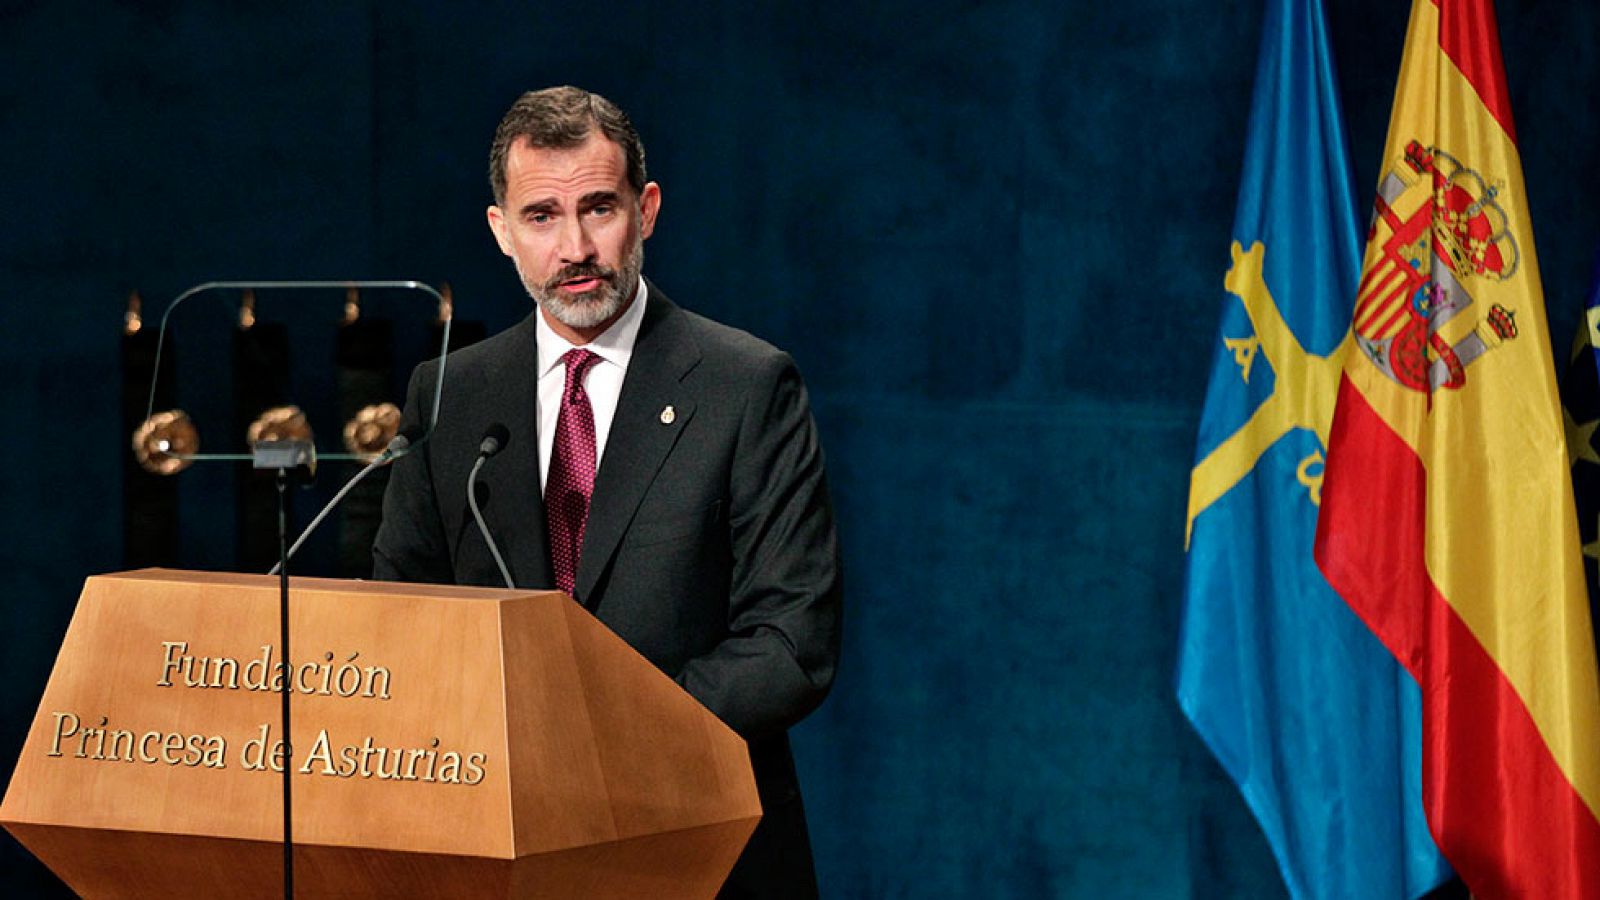 Premios Princesa de Asturias- Felipe VI reclama "una Espa�a alejada del pesimismo"